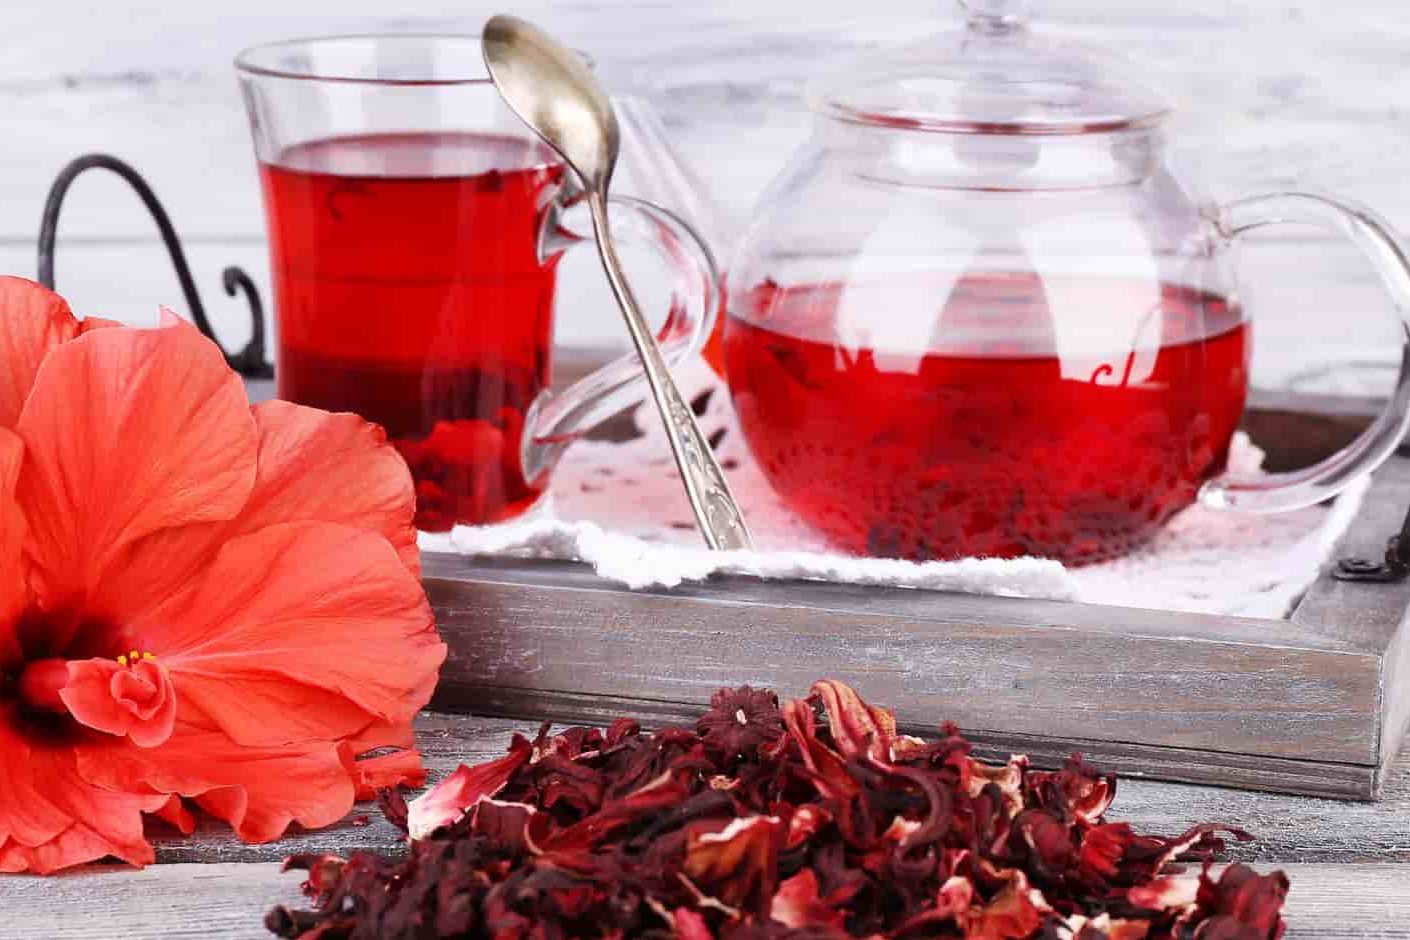 فوائد وأضرار الشاي الأحمر للتنحيف في الصباح